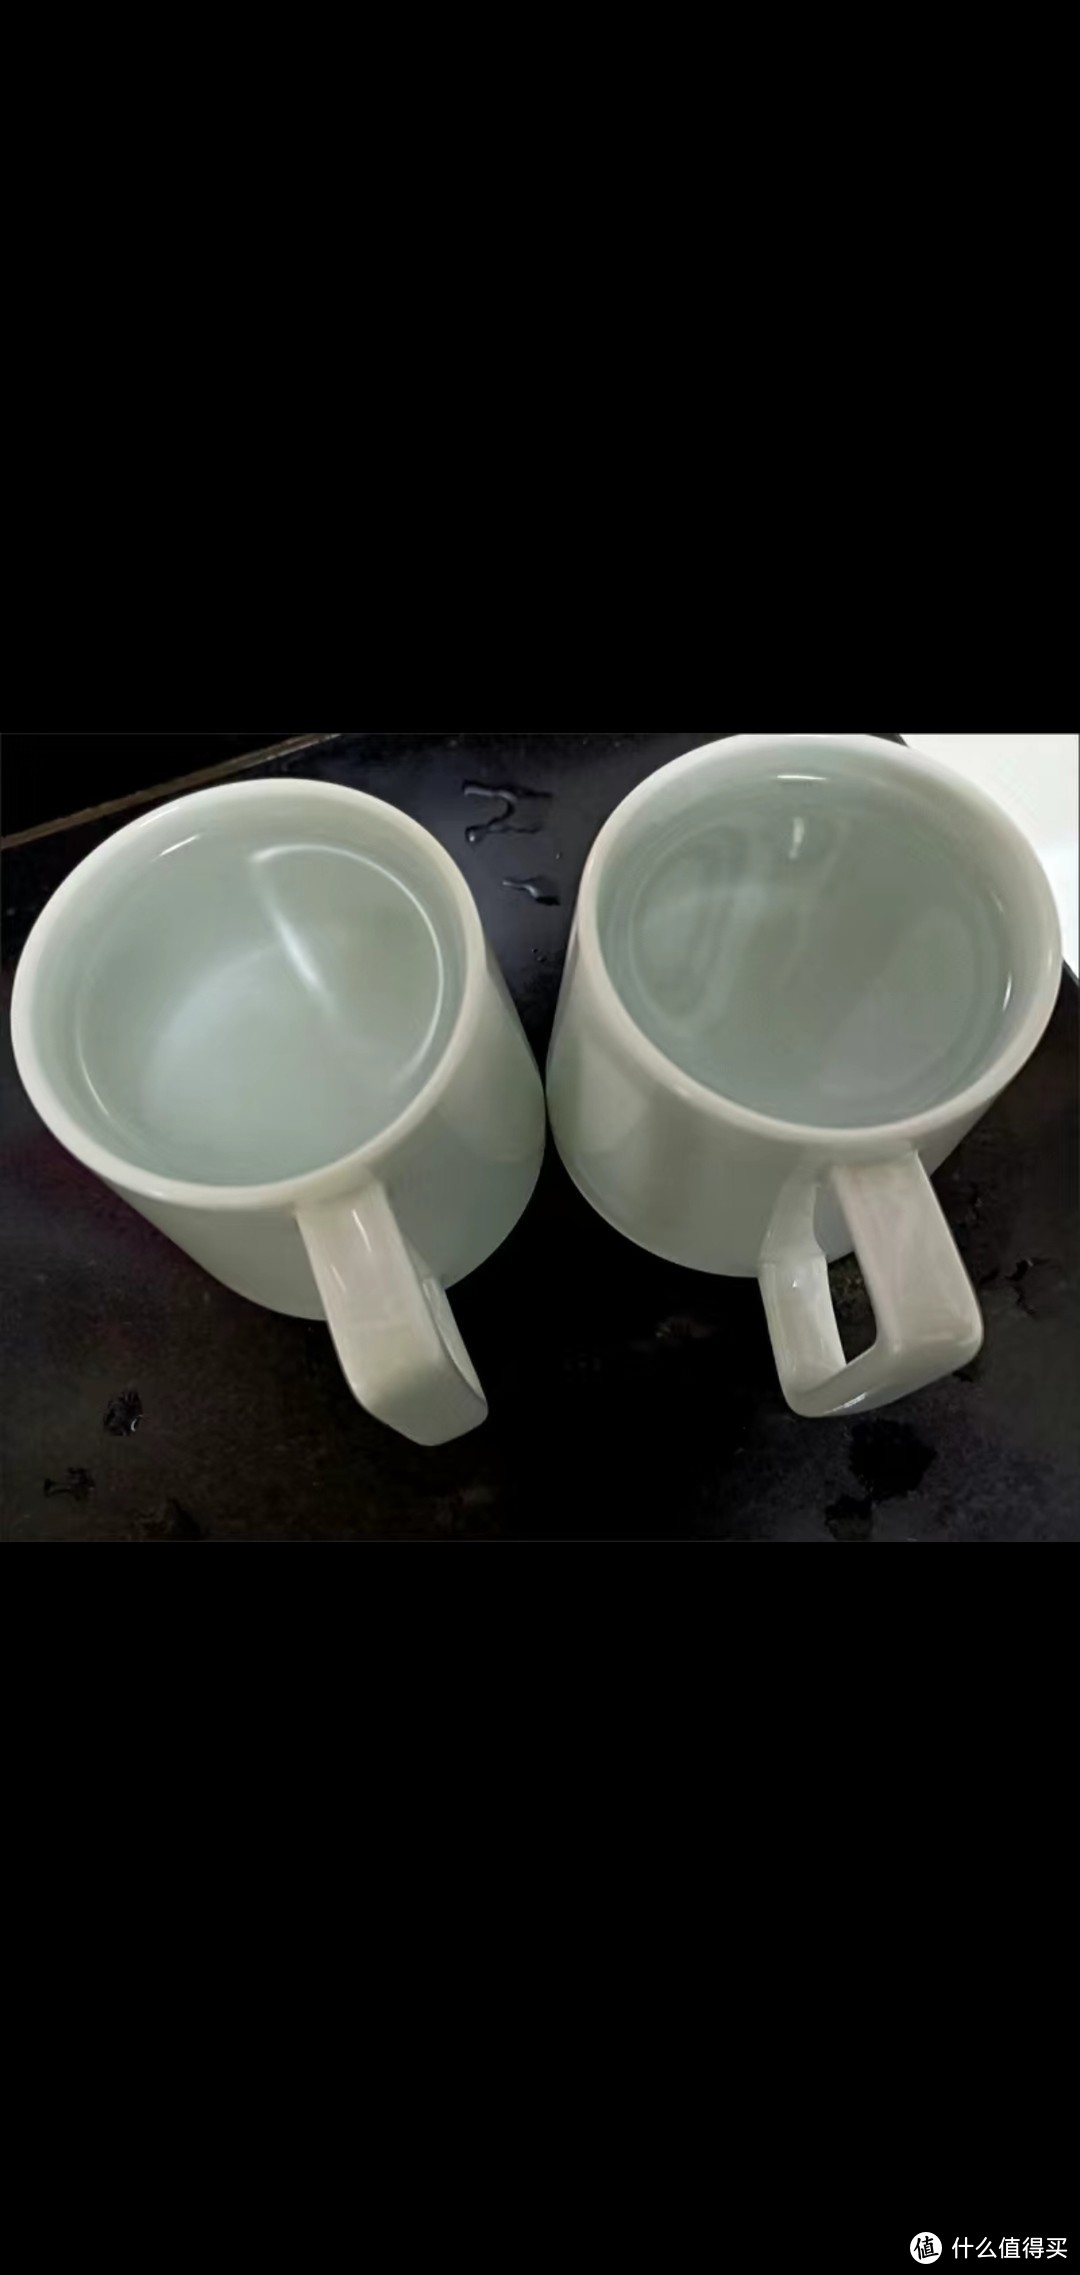 白淡蓝陶瓷水杯：一杯时光静好，简约使用，茶色暖融，美观实用